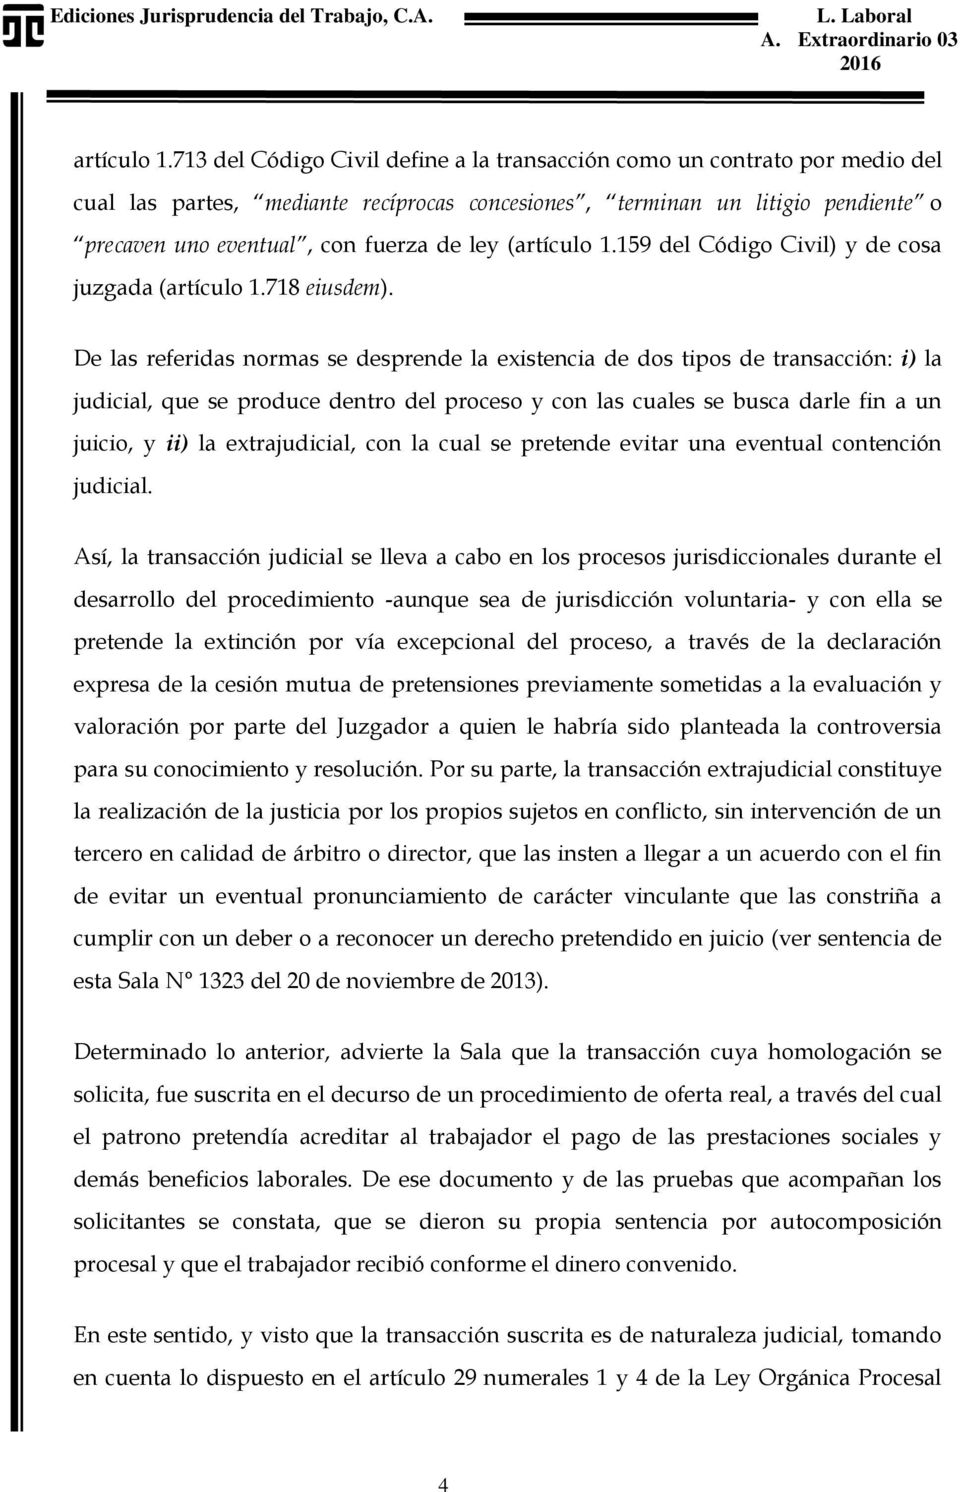 (159 del Código Civil) y de cosa juzgada (718 eiusdem).